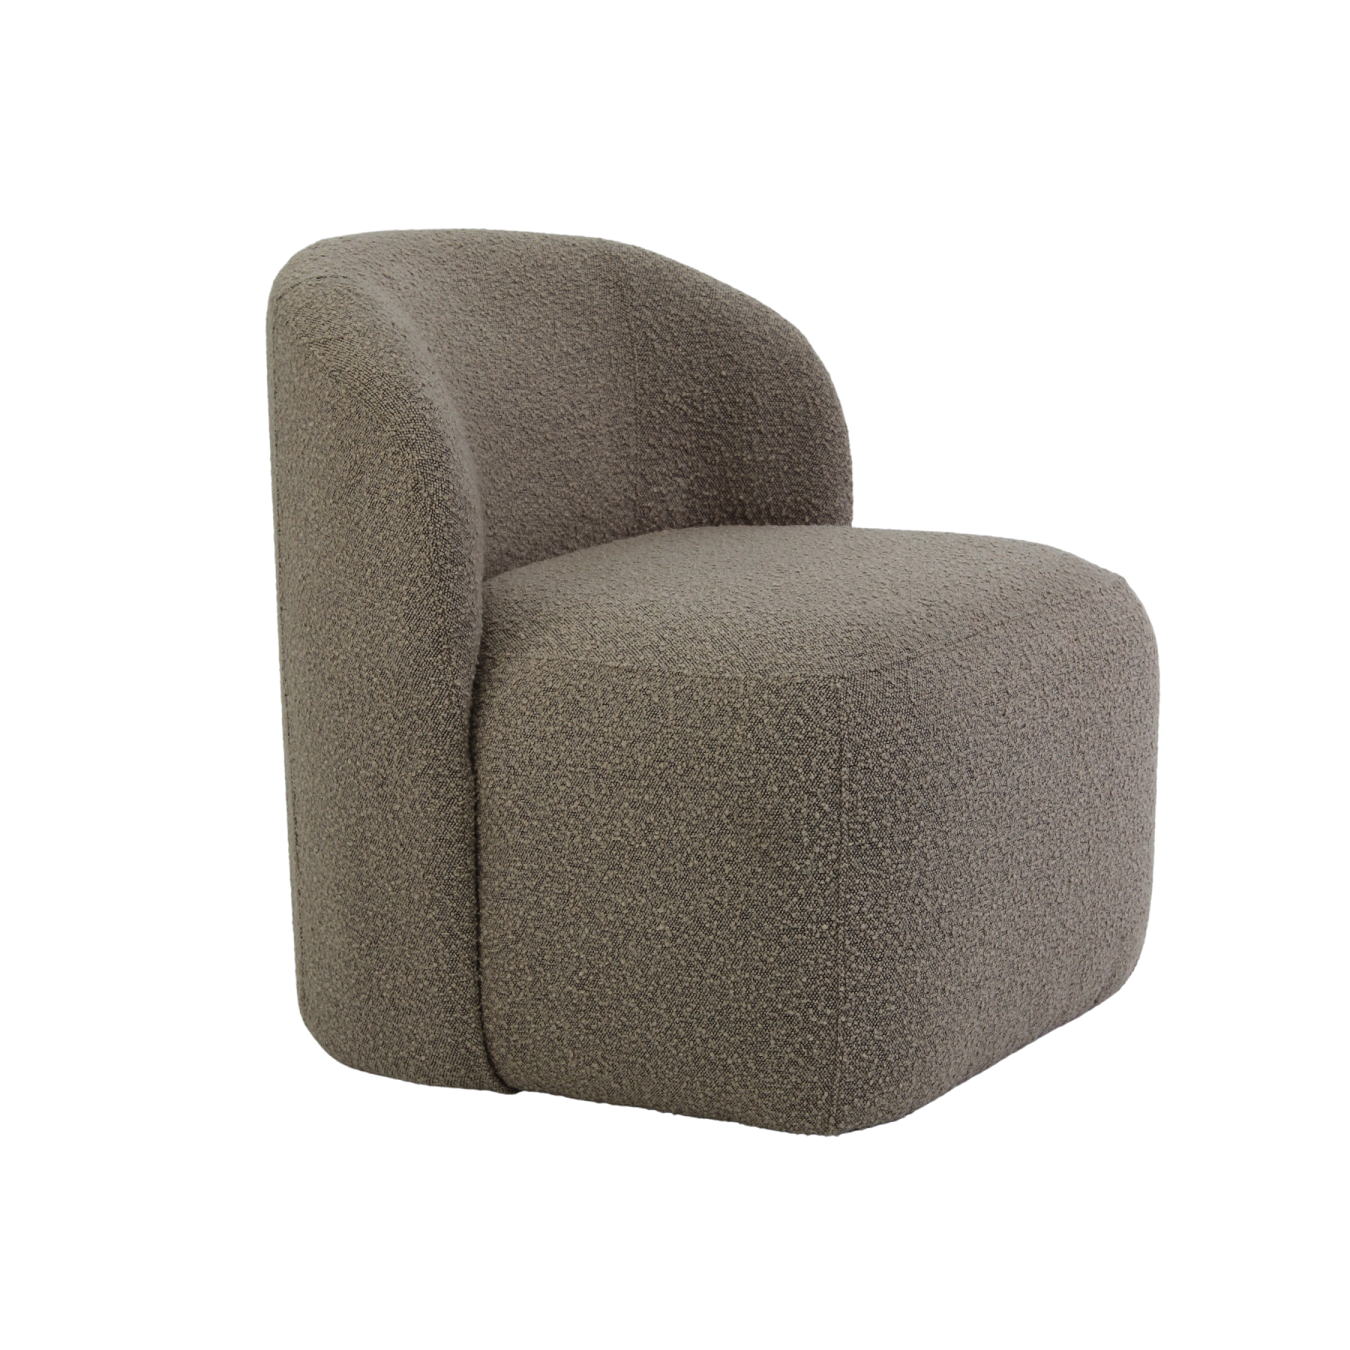 Moderner Lounge Sessel aus Stoff | VIS-Modell